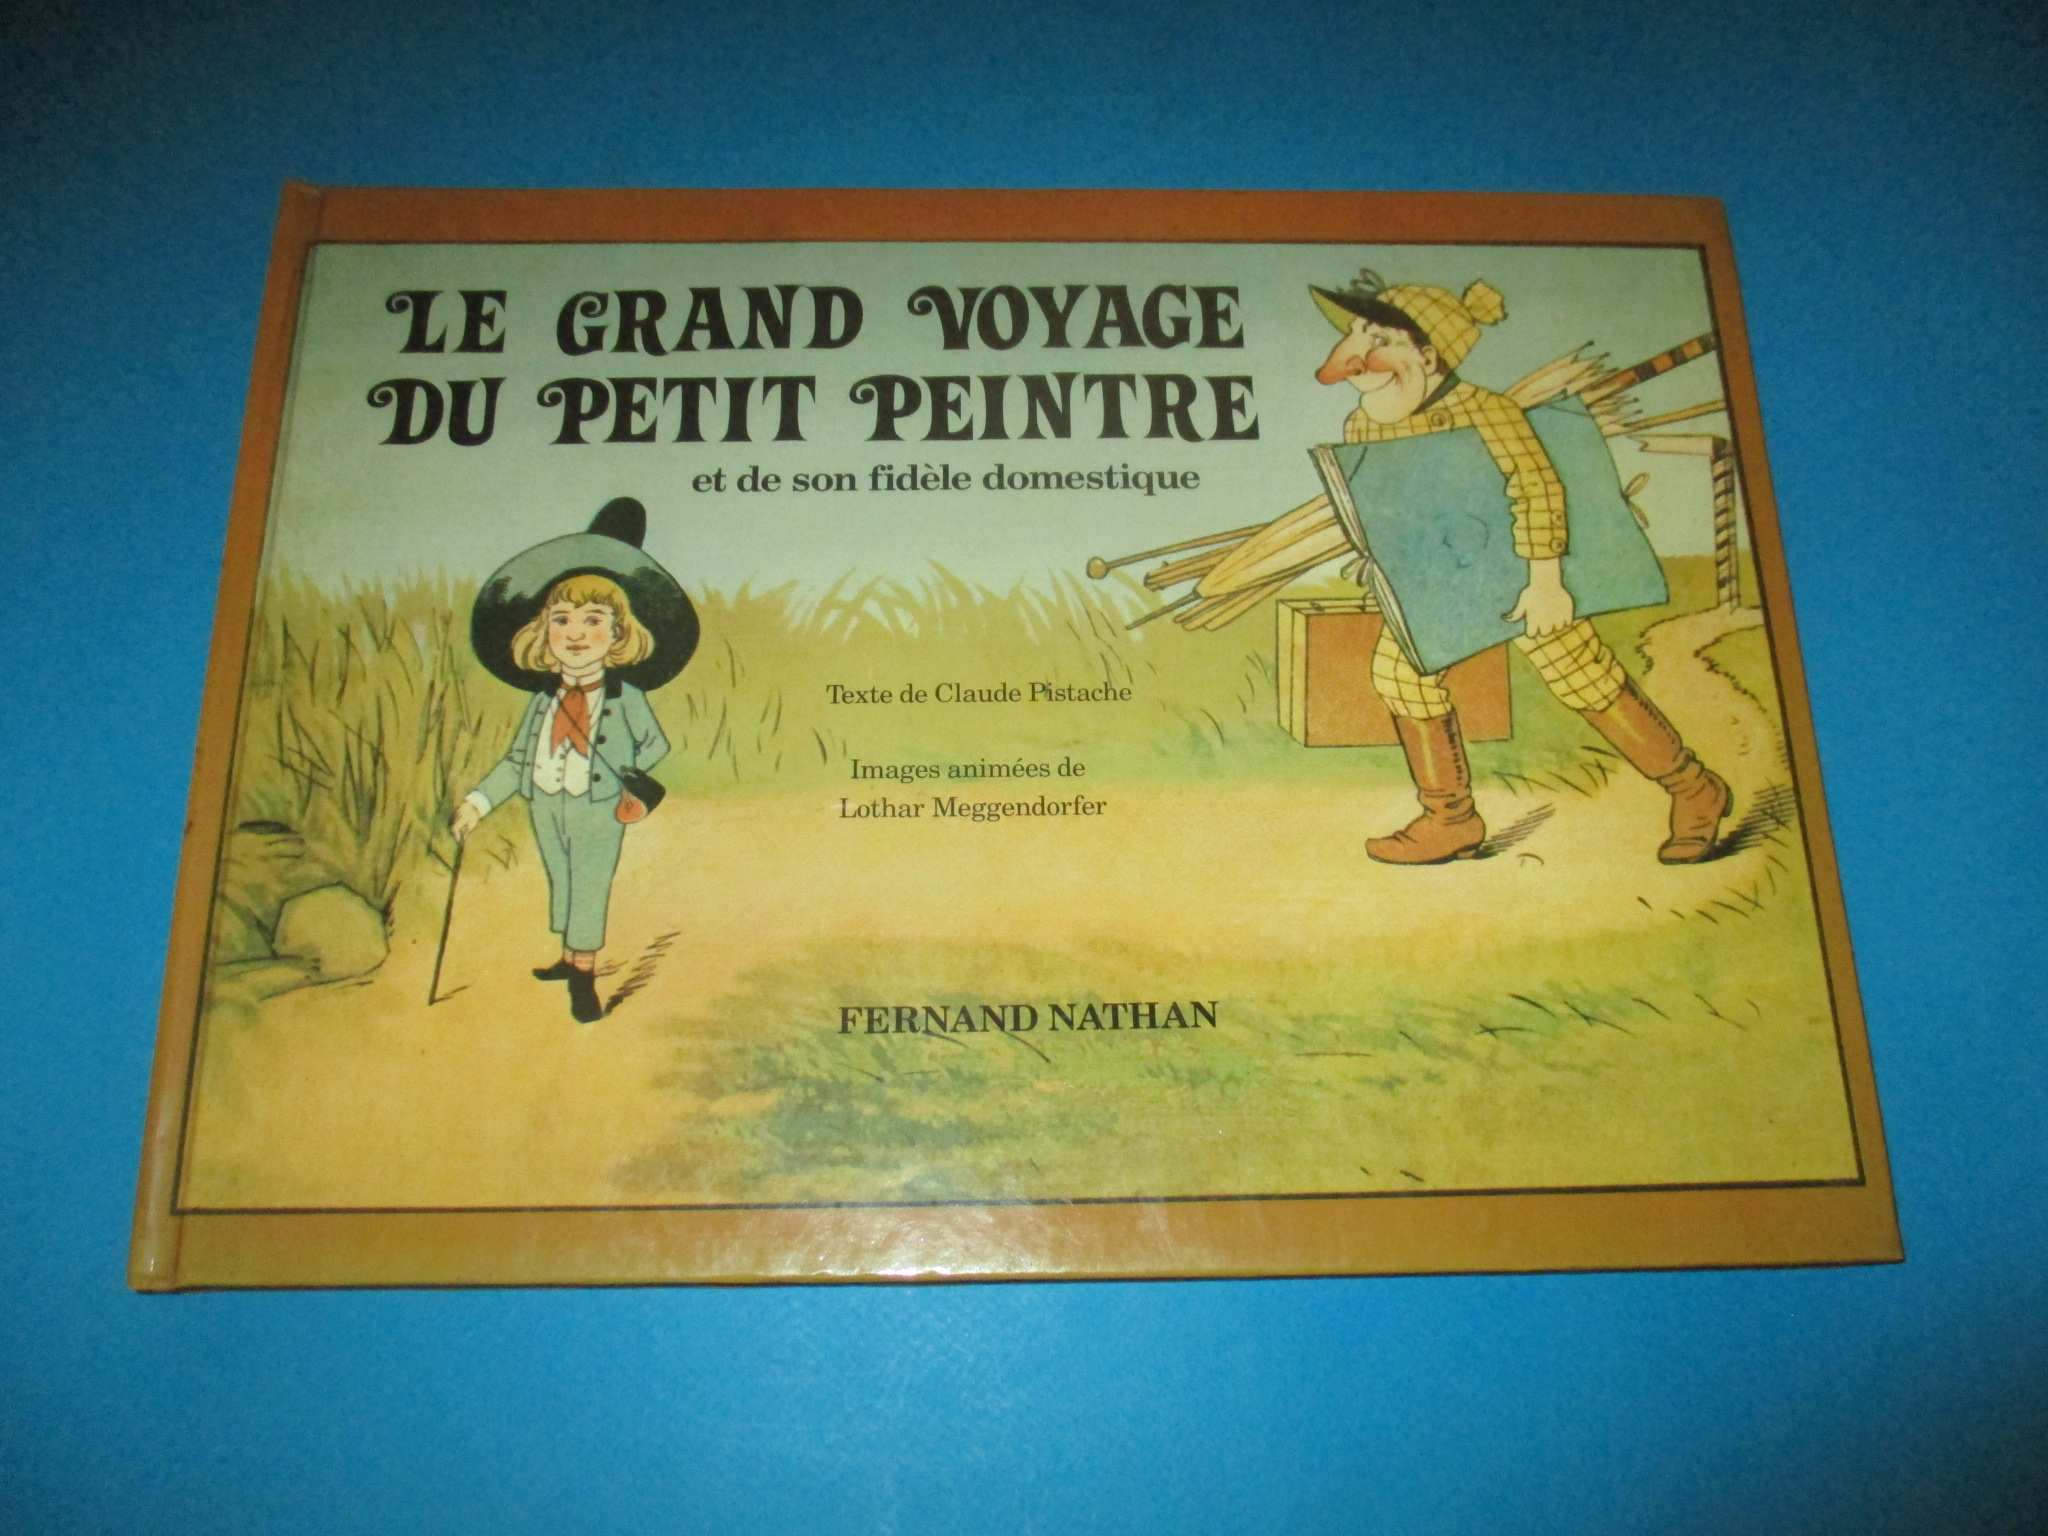 Le Grand voyage du Petit Peintre et de son fidèle domestique, livre animé de Lothar Meggendorfer, Claude Pistache, Fernand Nathan